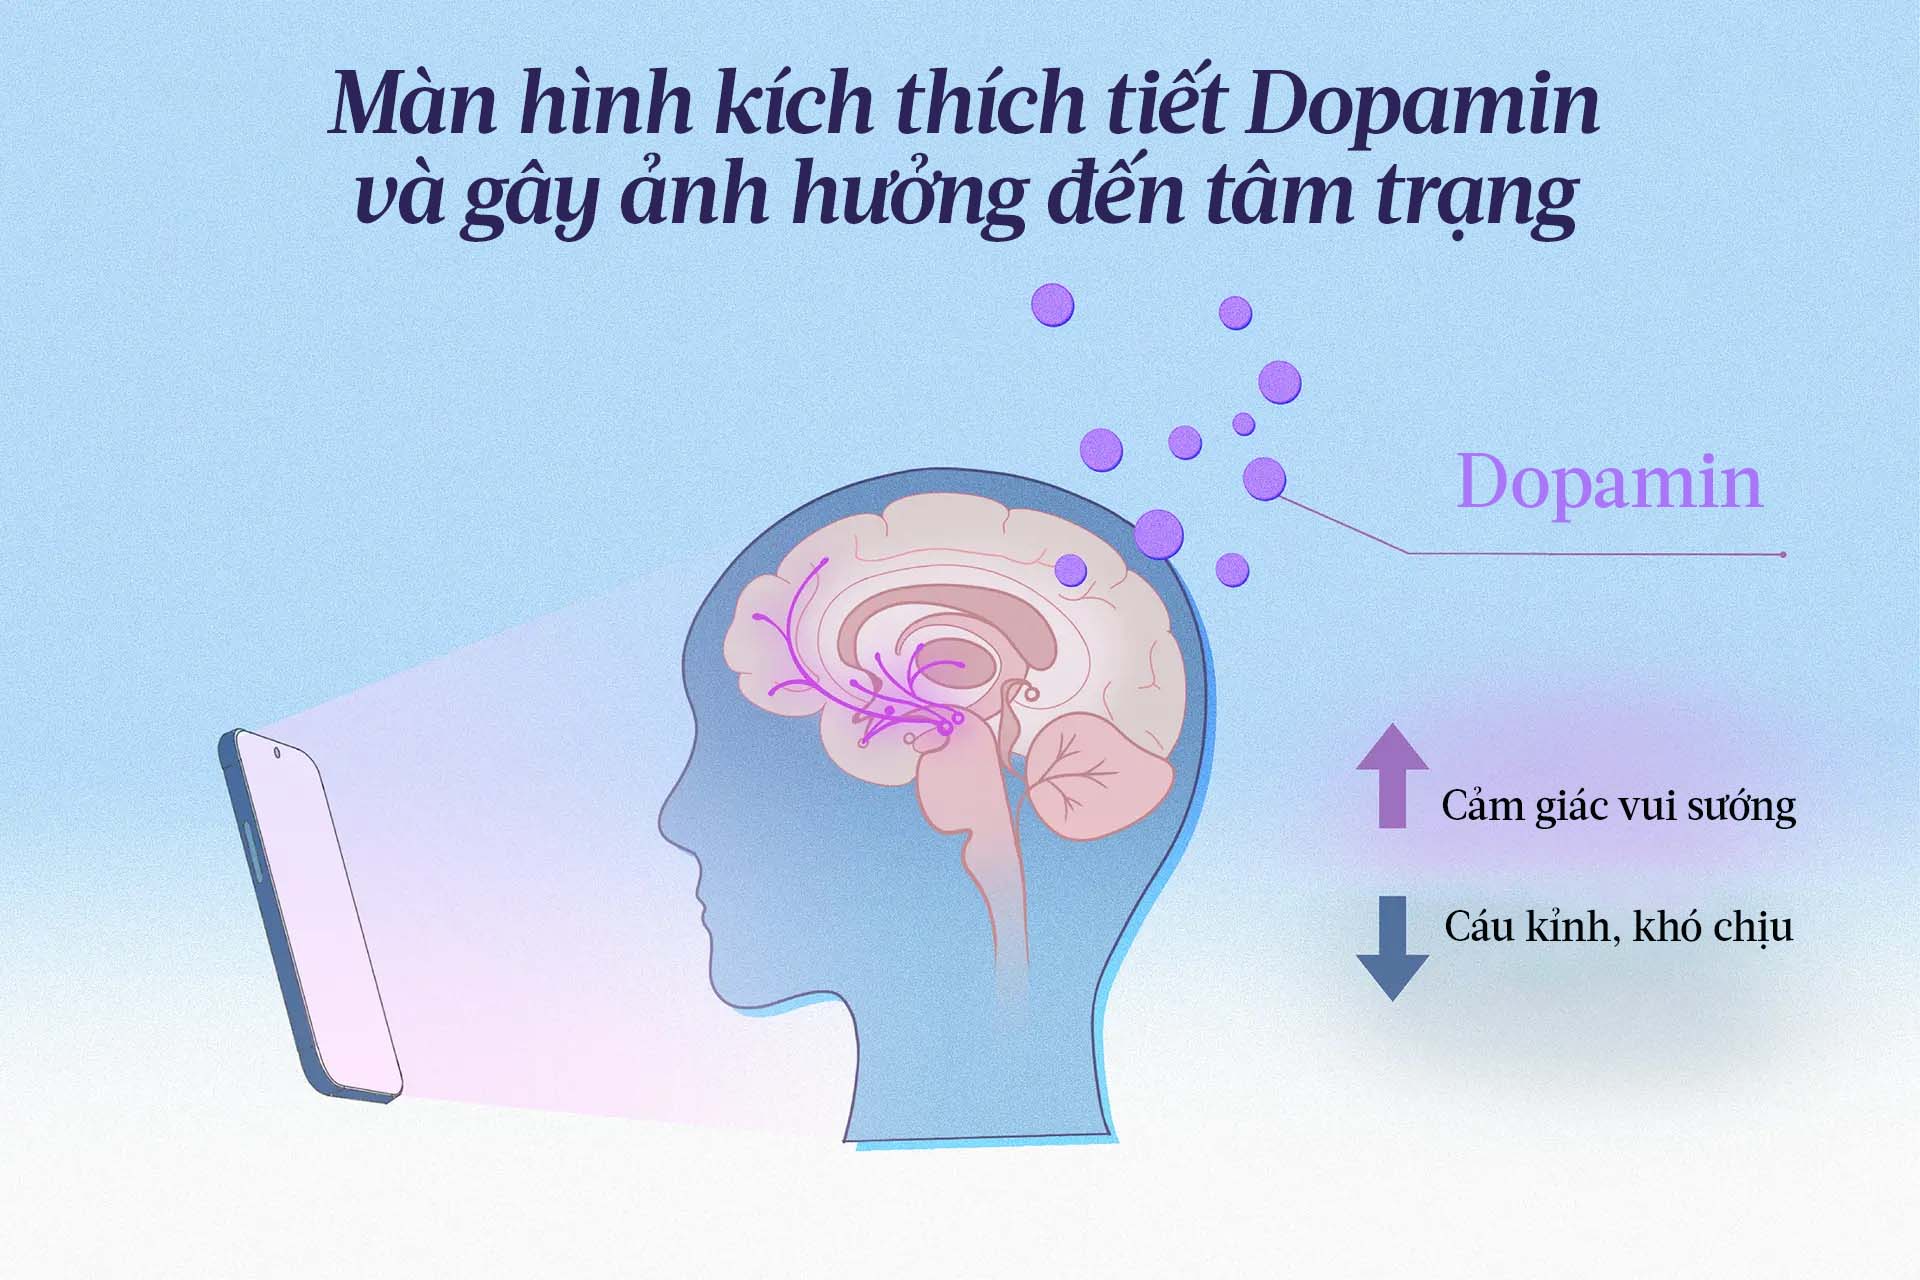 Dopamine tạo ra cảm giác vui sướng, trong khi sự sụt giảm của dopamin lại có liên quan đến sự cáu kỉnh và khó chịu. (Minh họa của The Epoch Times, Shutterstock)